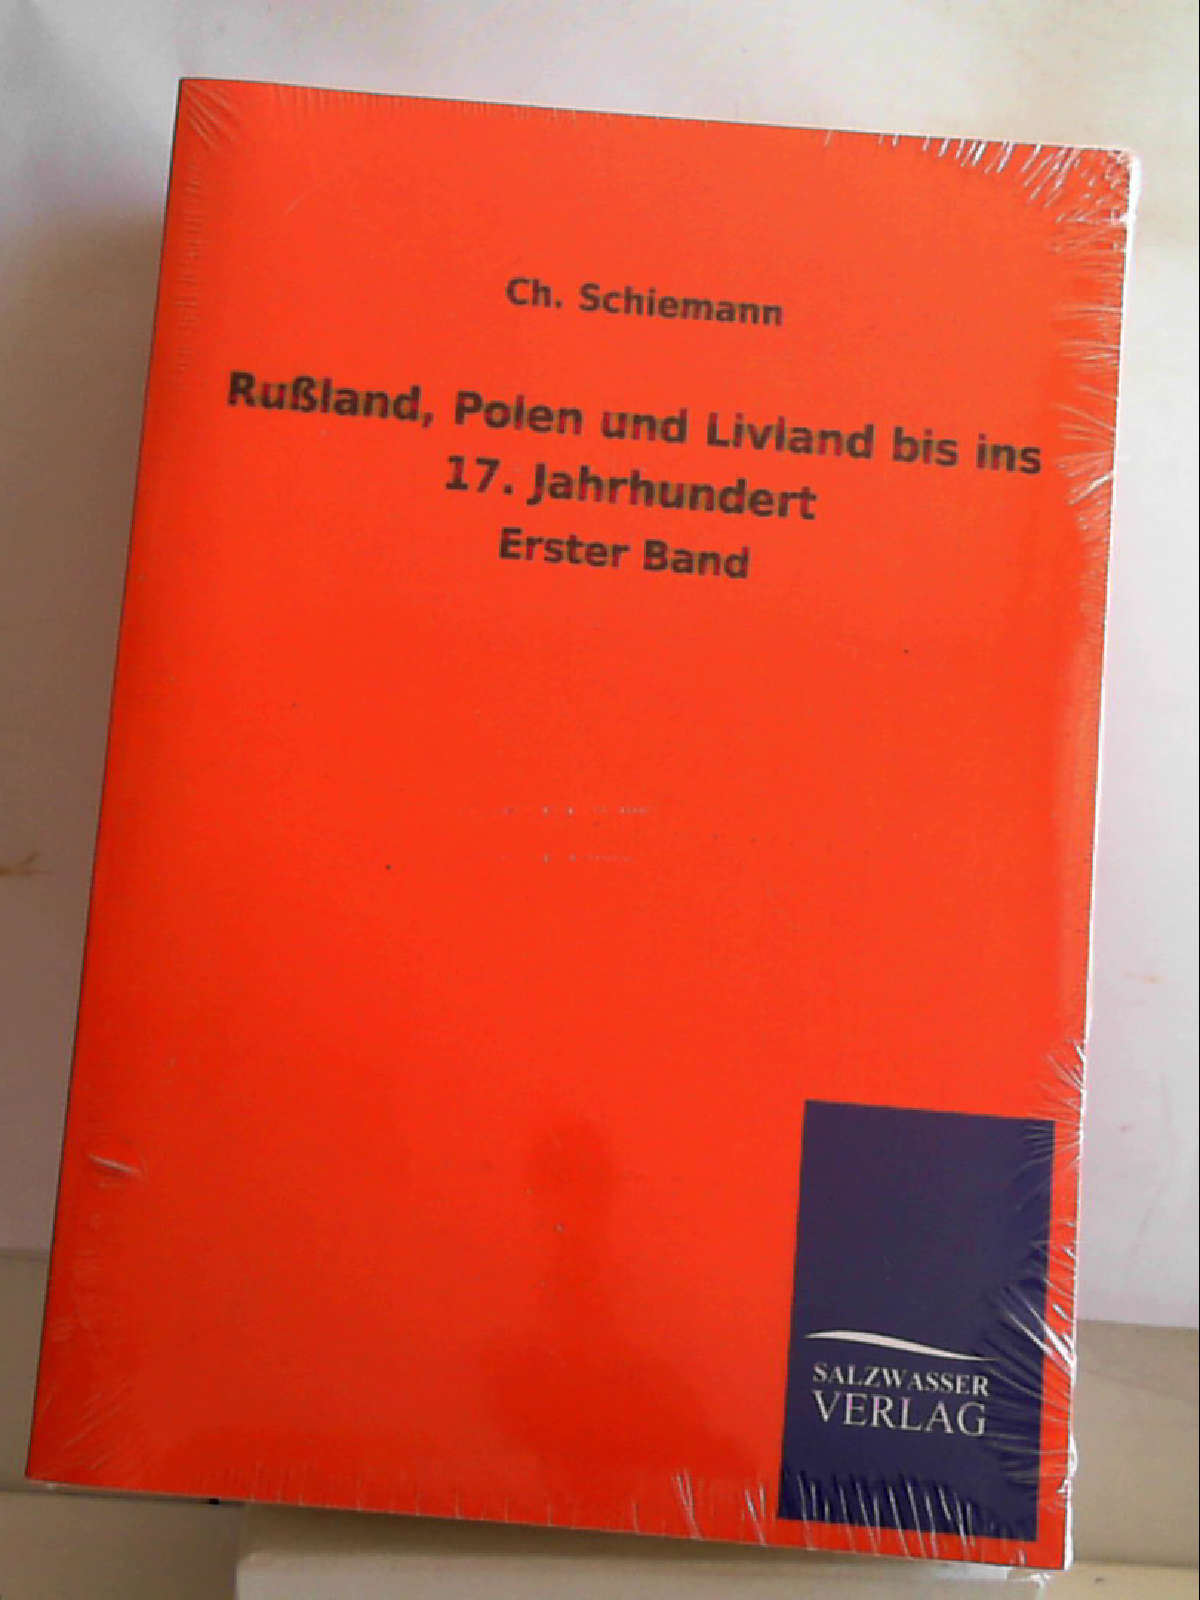 Rußland, Polen und Livland bis ins 17. Jahrhundert: Erster Band [Paperback] [May 17, 2013] Schiemann, Ch. - Ch. Schiemann